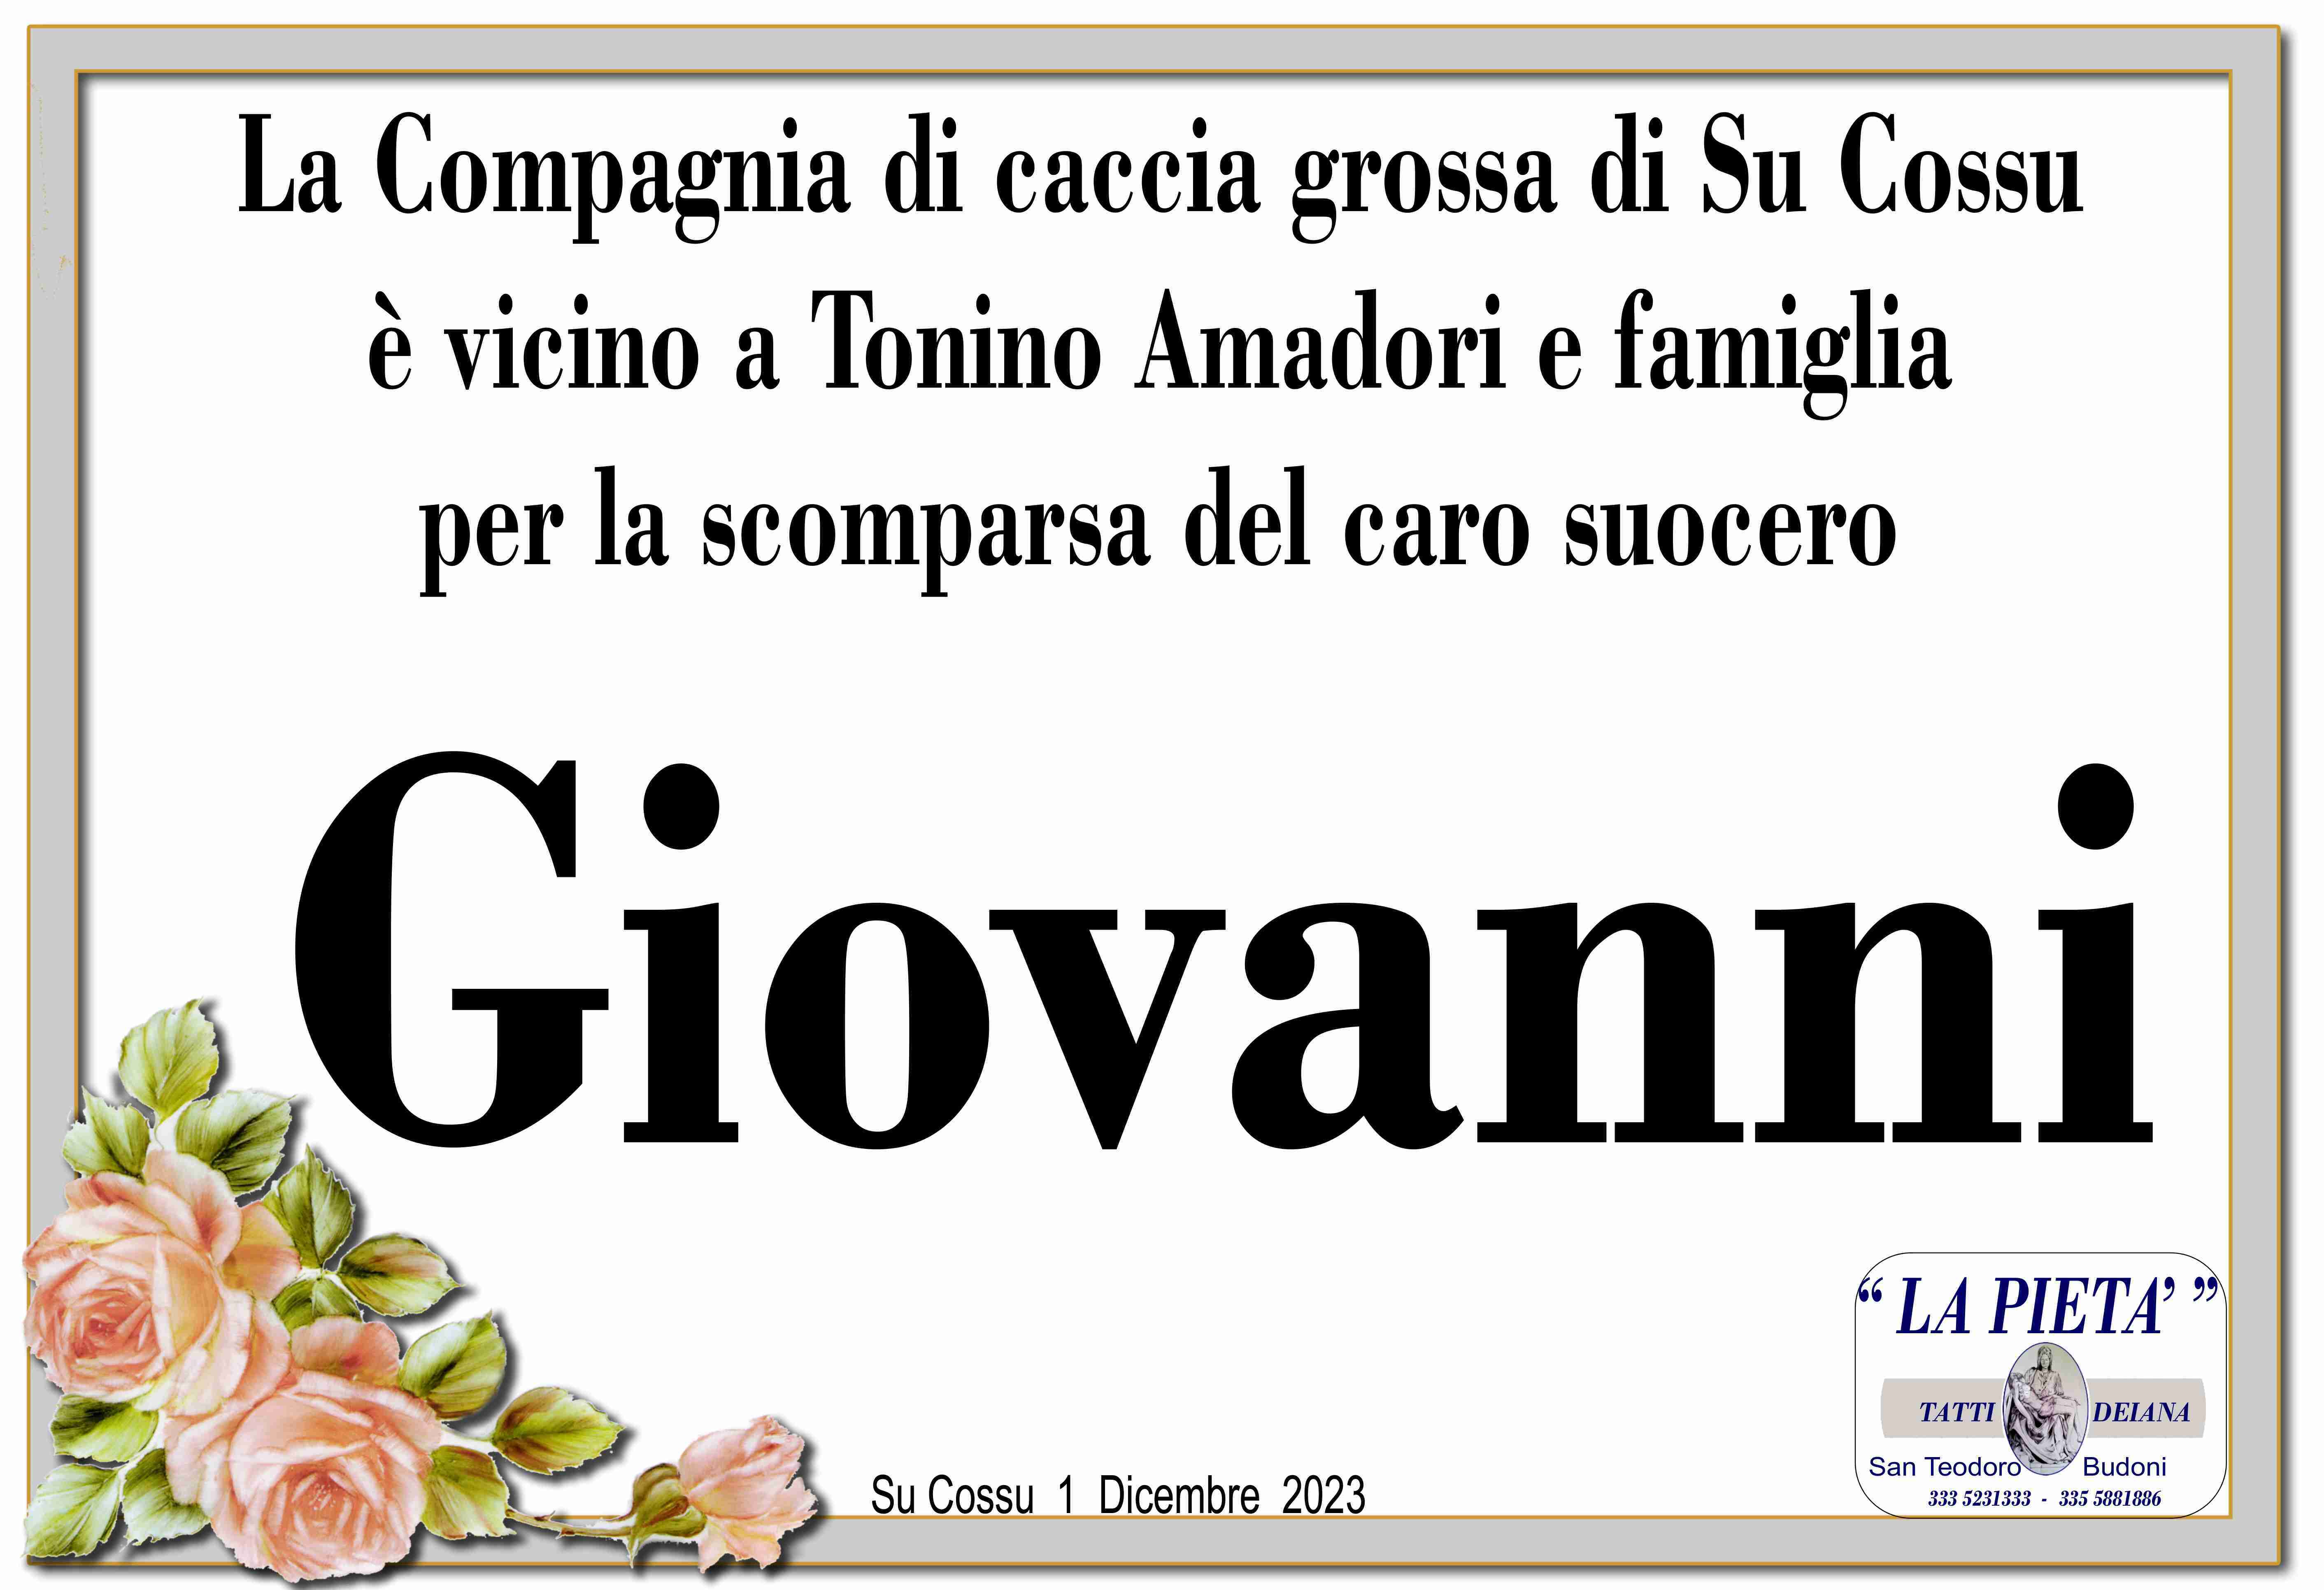 Giovanni Canu